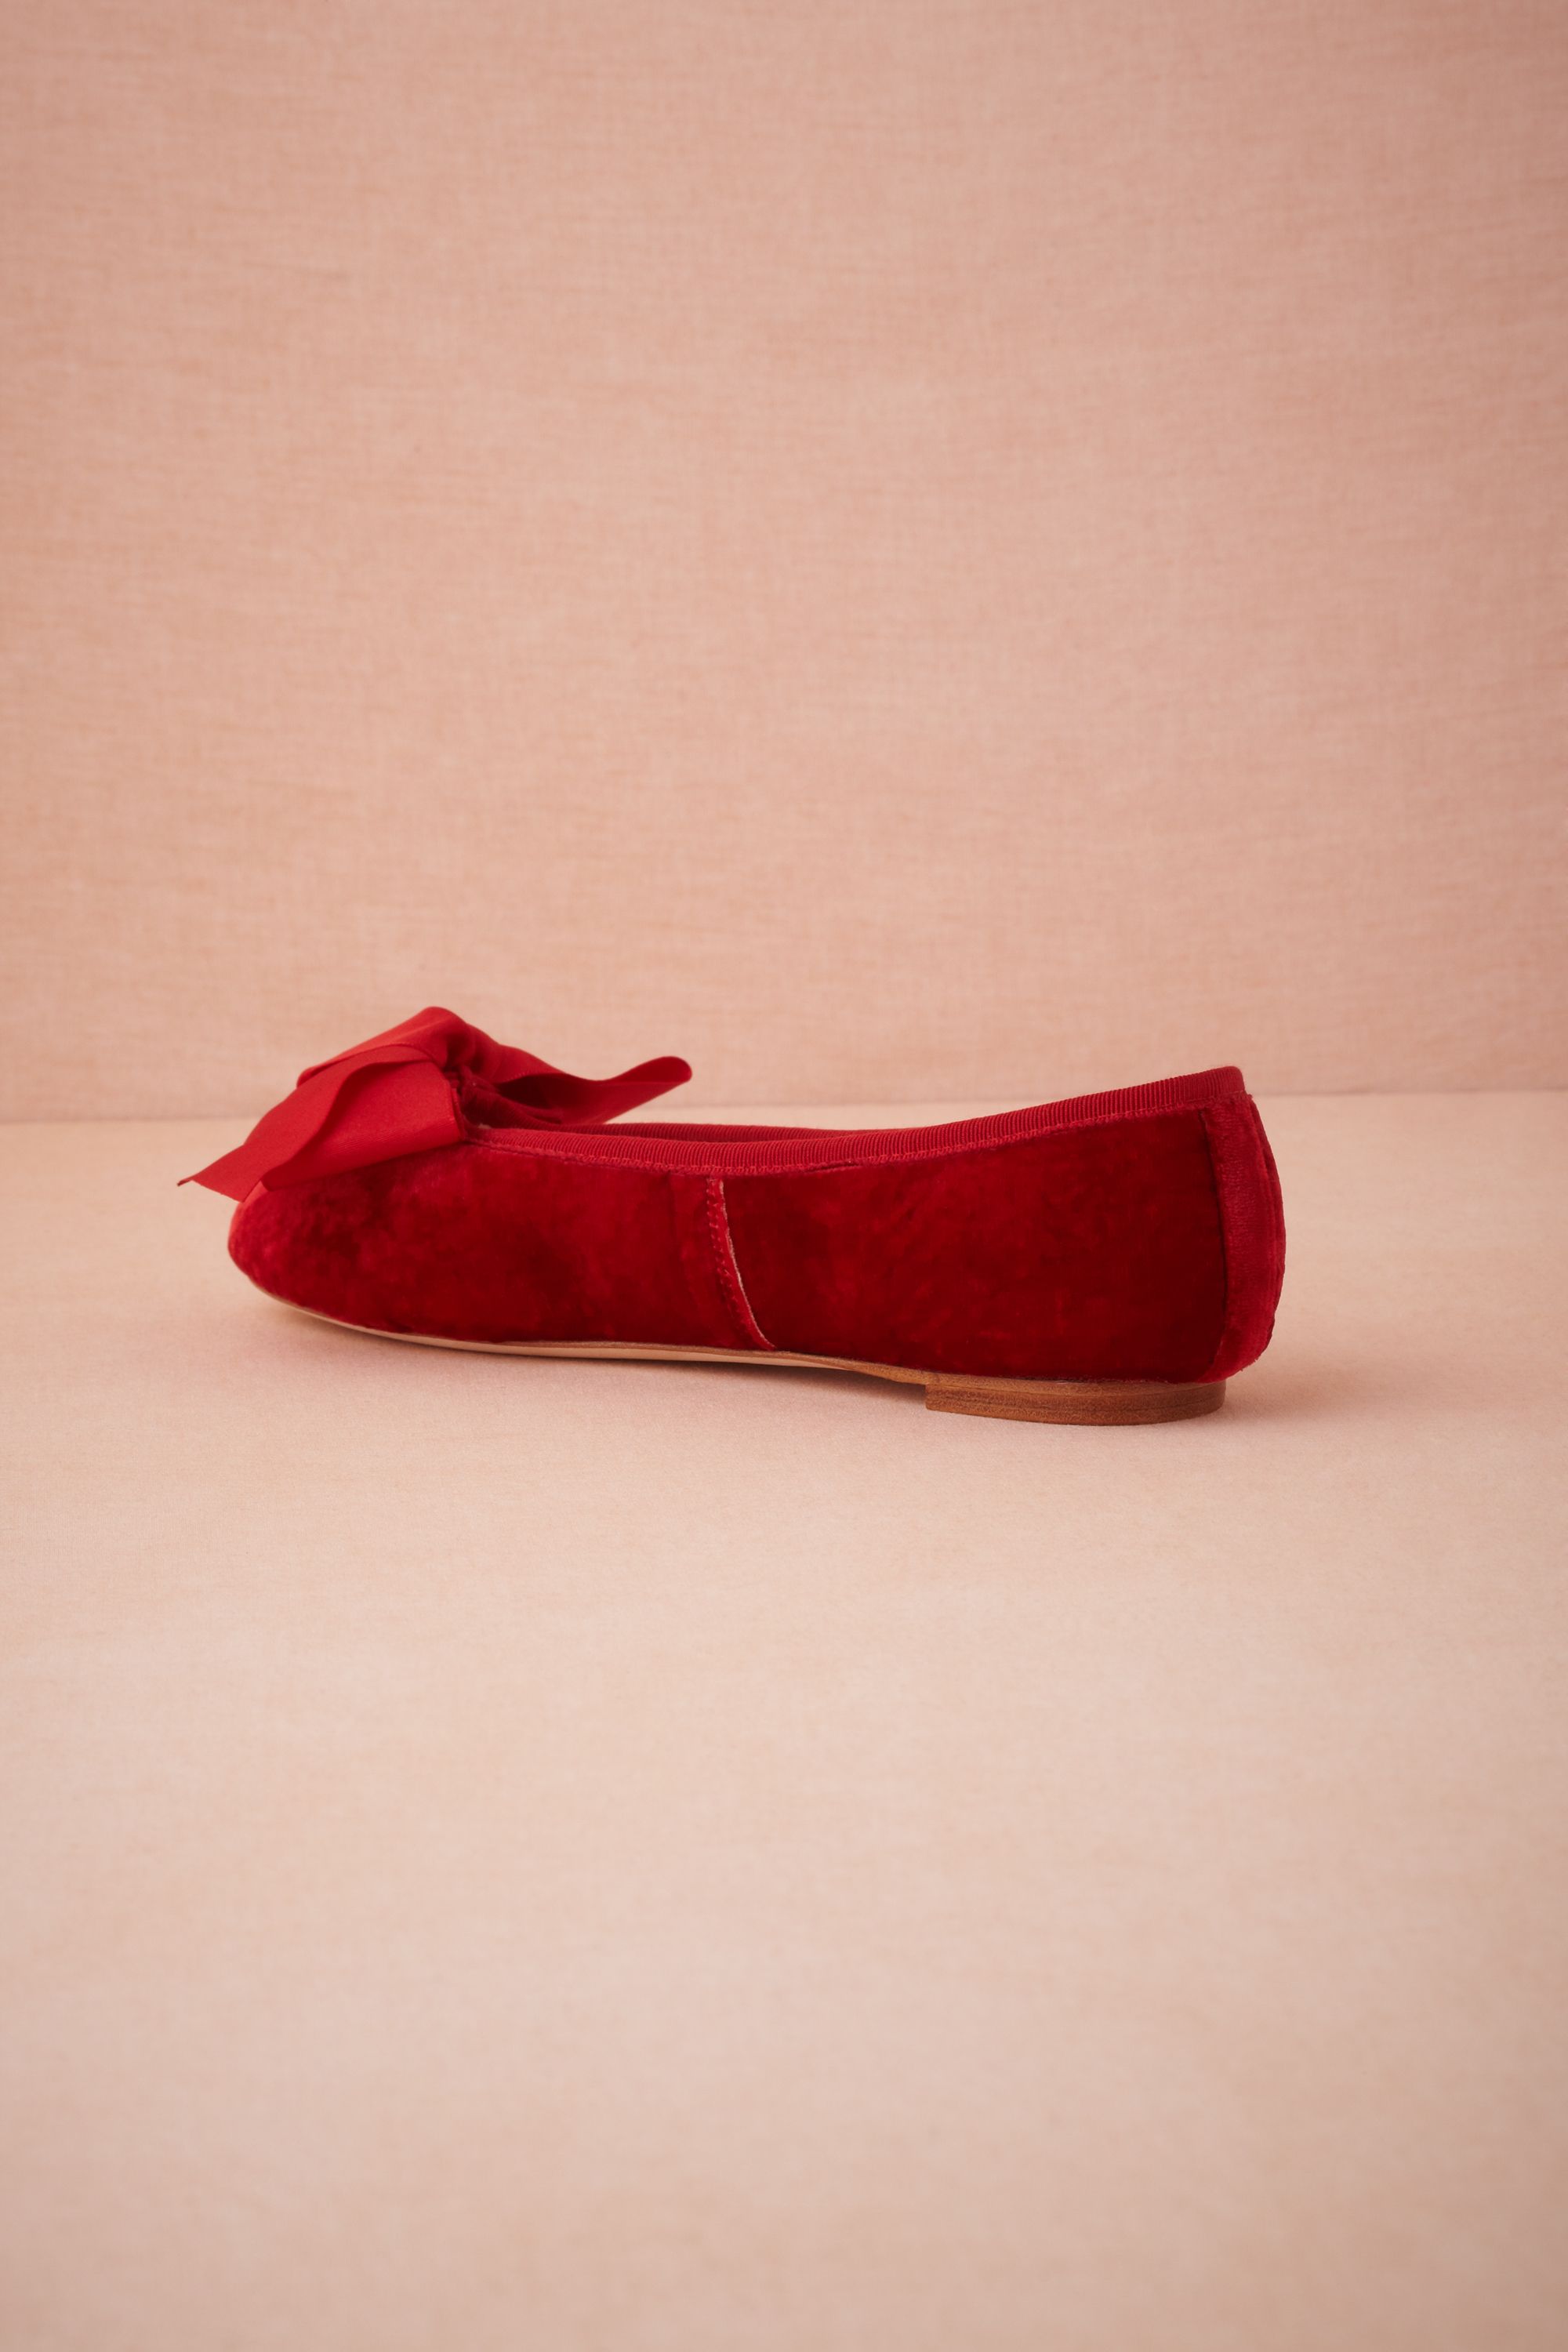 Red Velvet Slippers in Sale | BHLDN